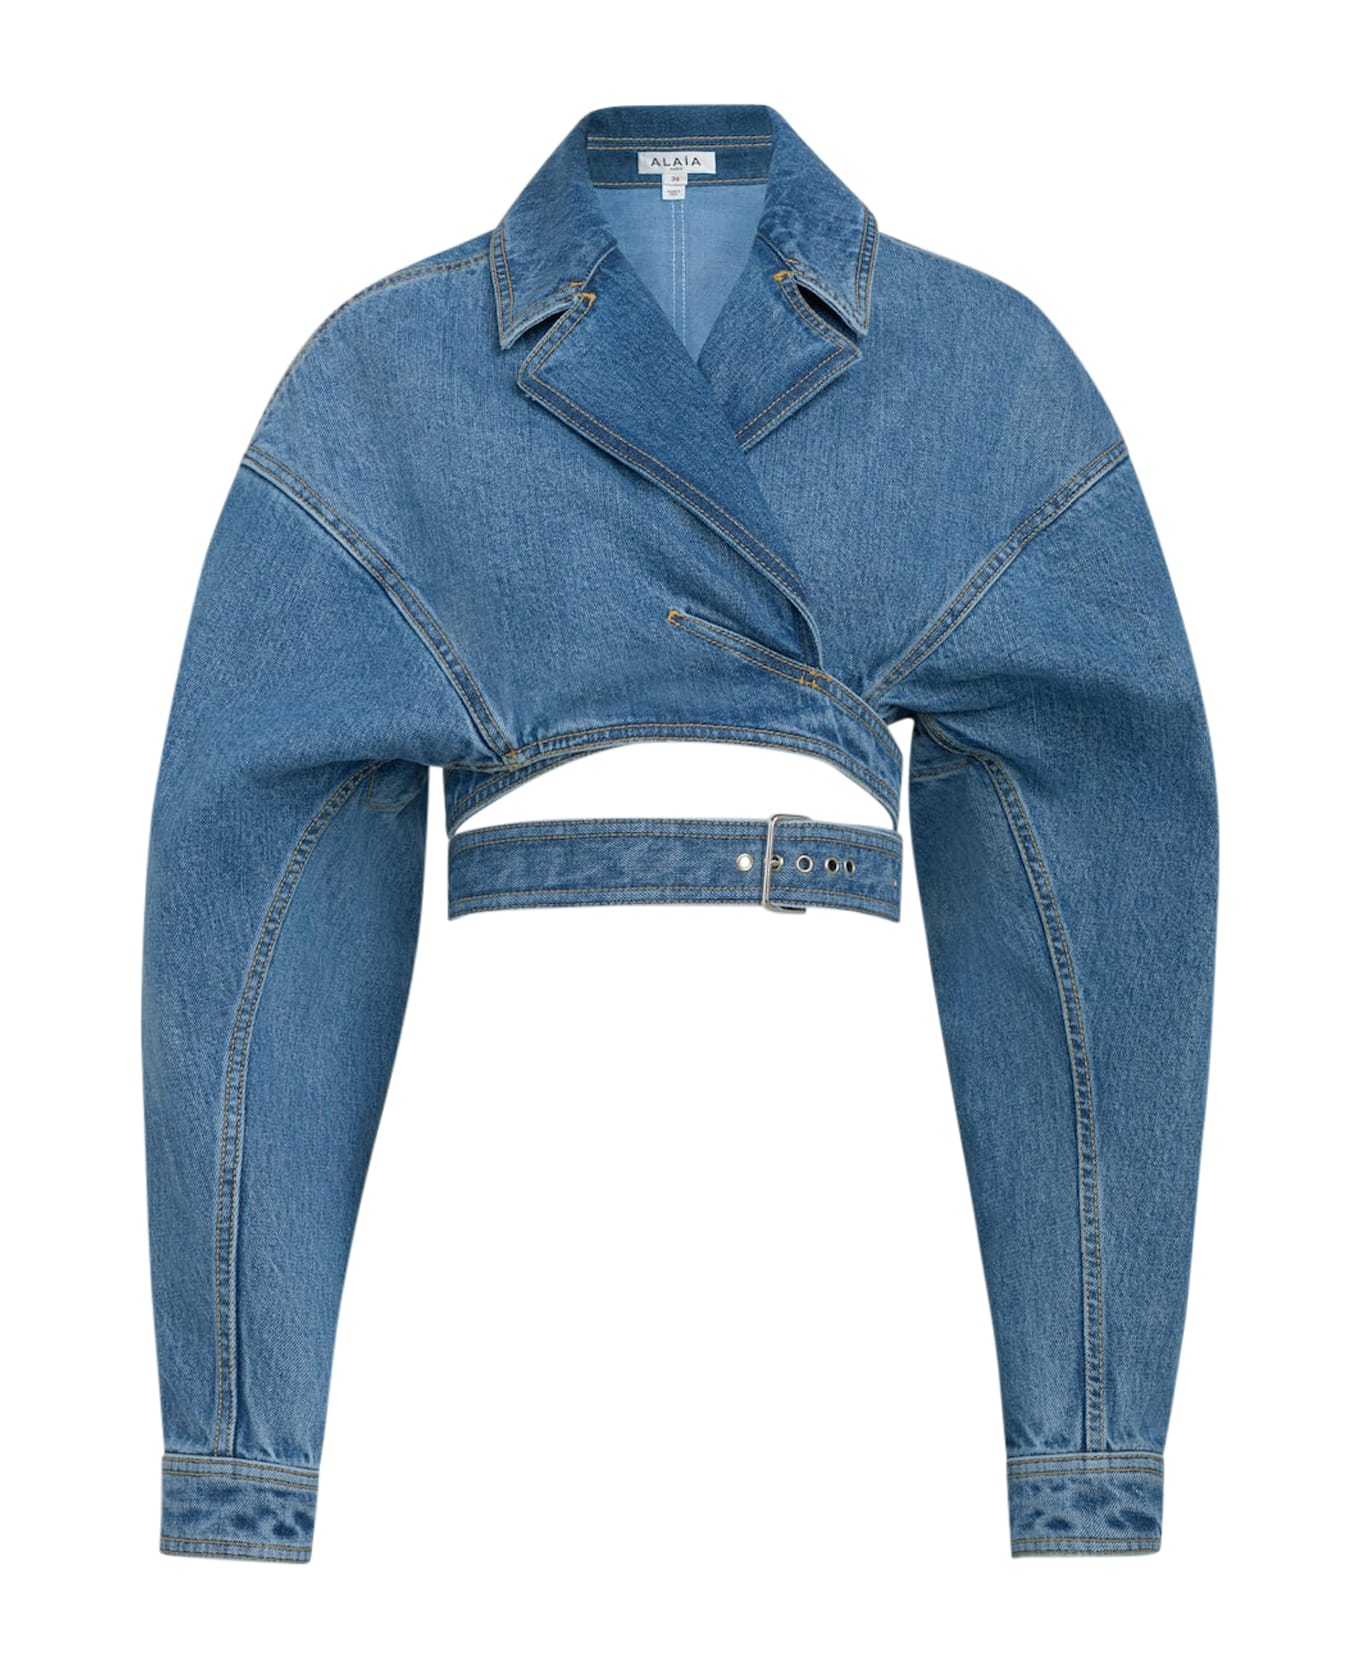 Alaia Crossover Jackt - Bleu Vintage レザージャケット